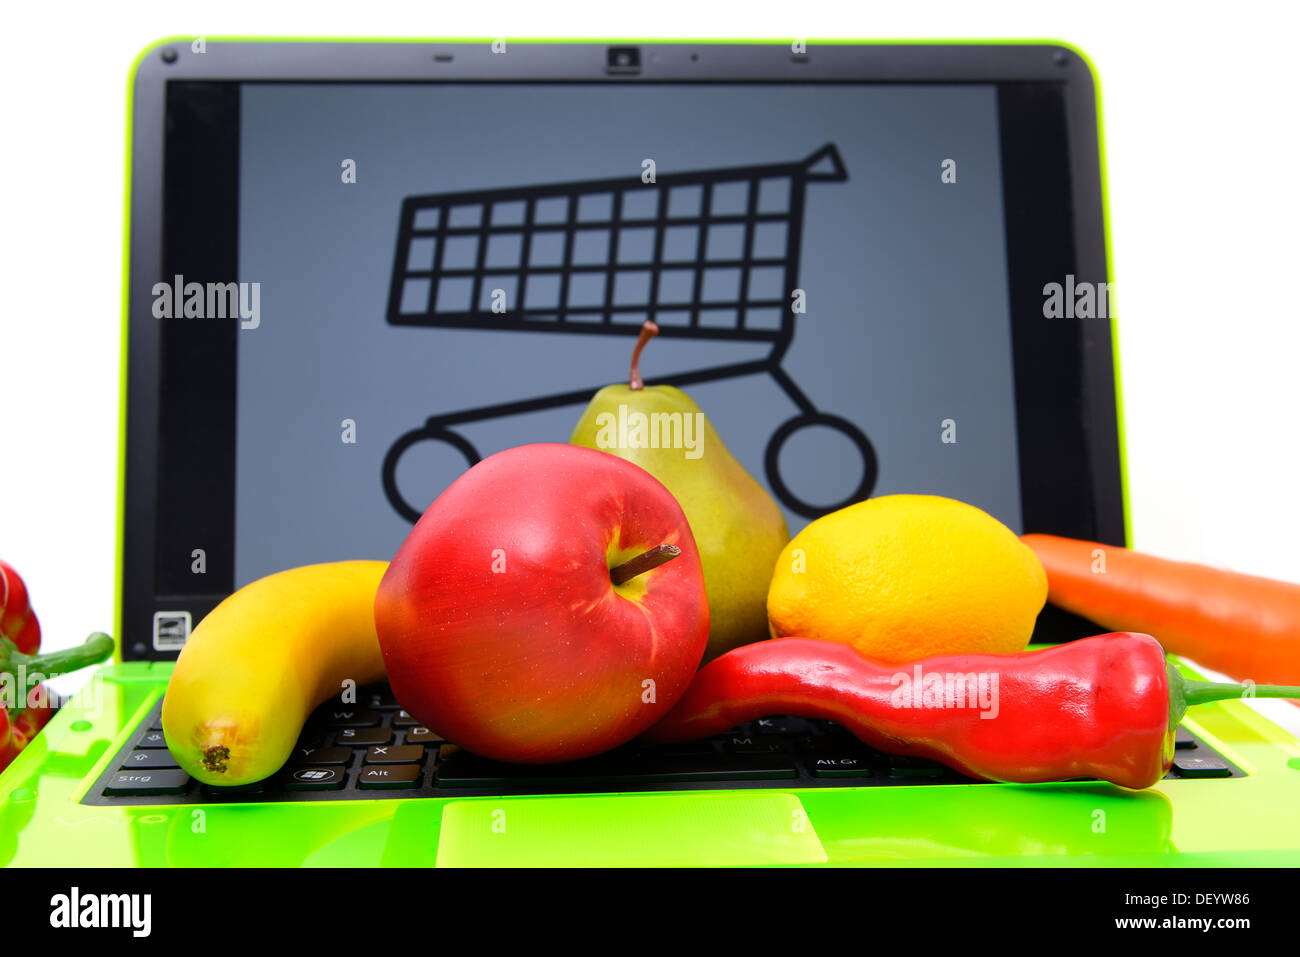 Fruit on a laptop by shopping cart, on-line shopping of food, Obst auf einem Laptop mit Einkaufswagen, Onlineshopping von Lebens Stock Photo